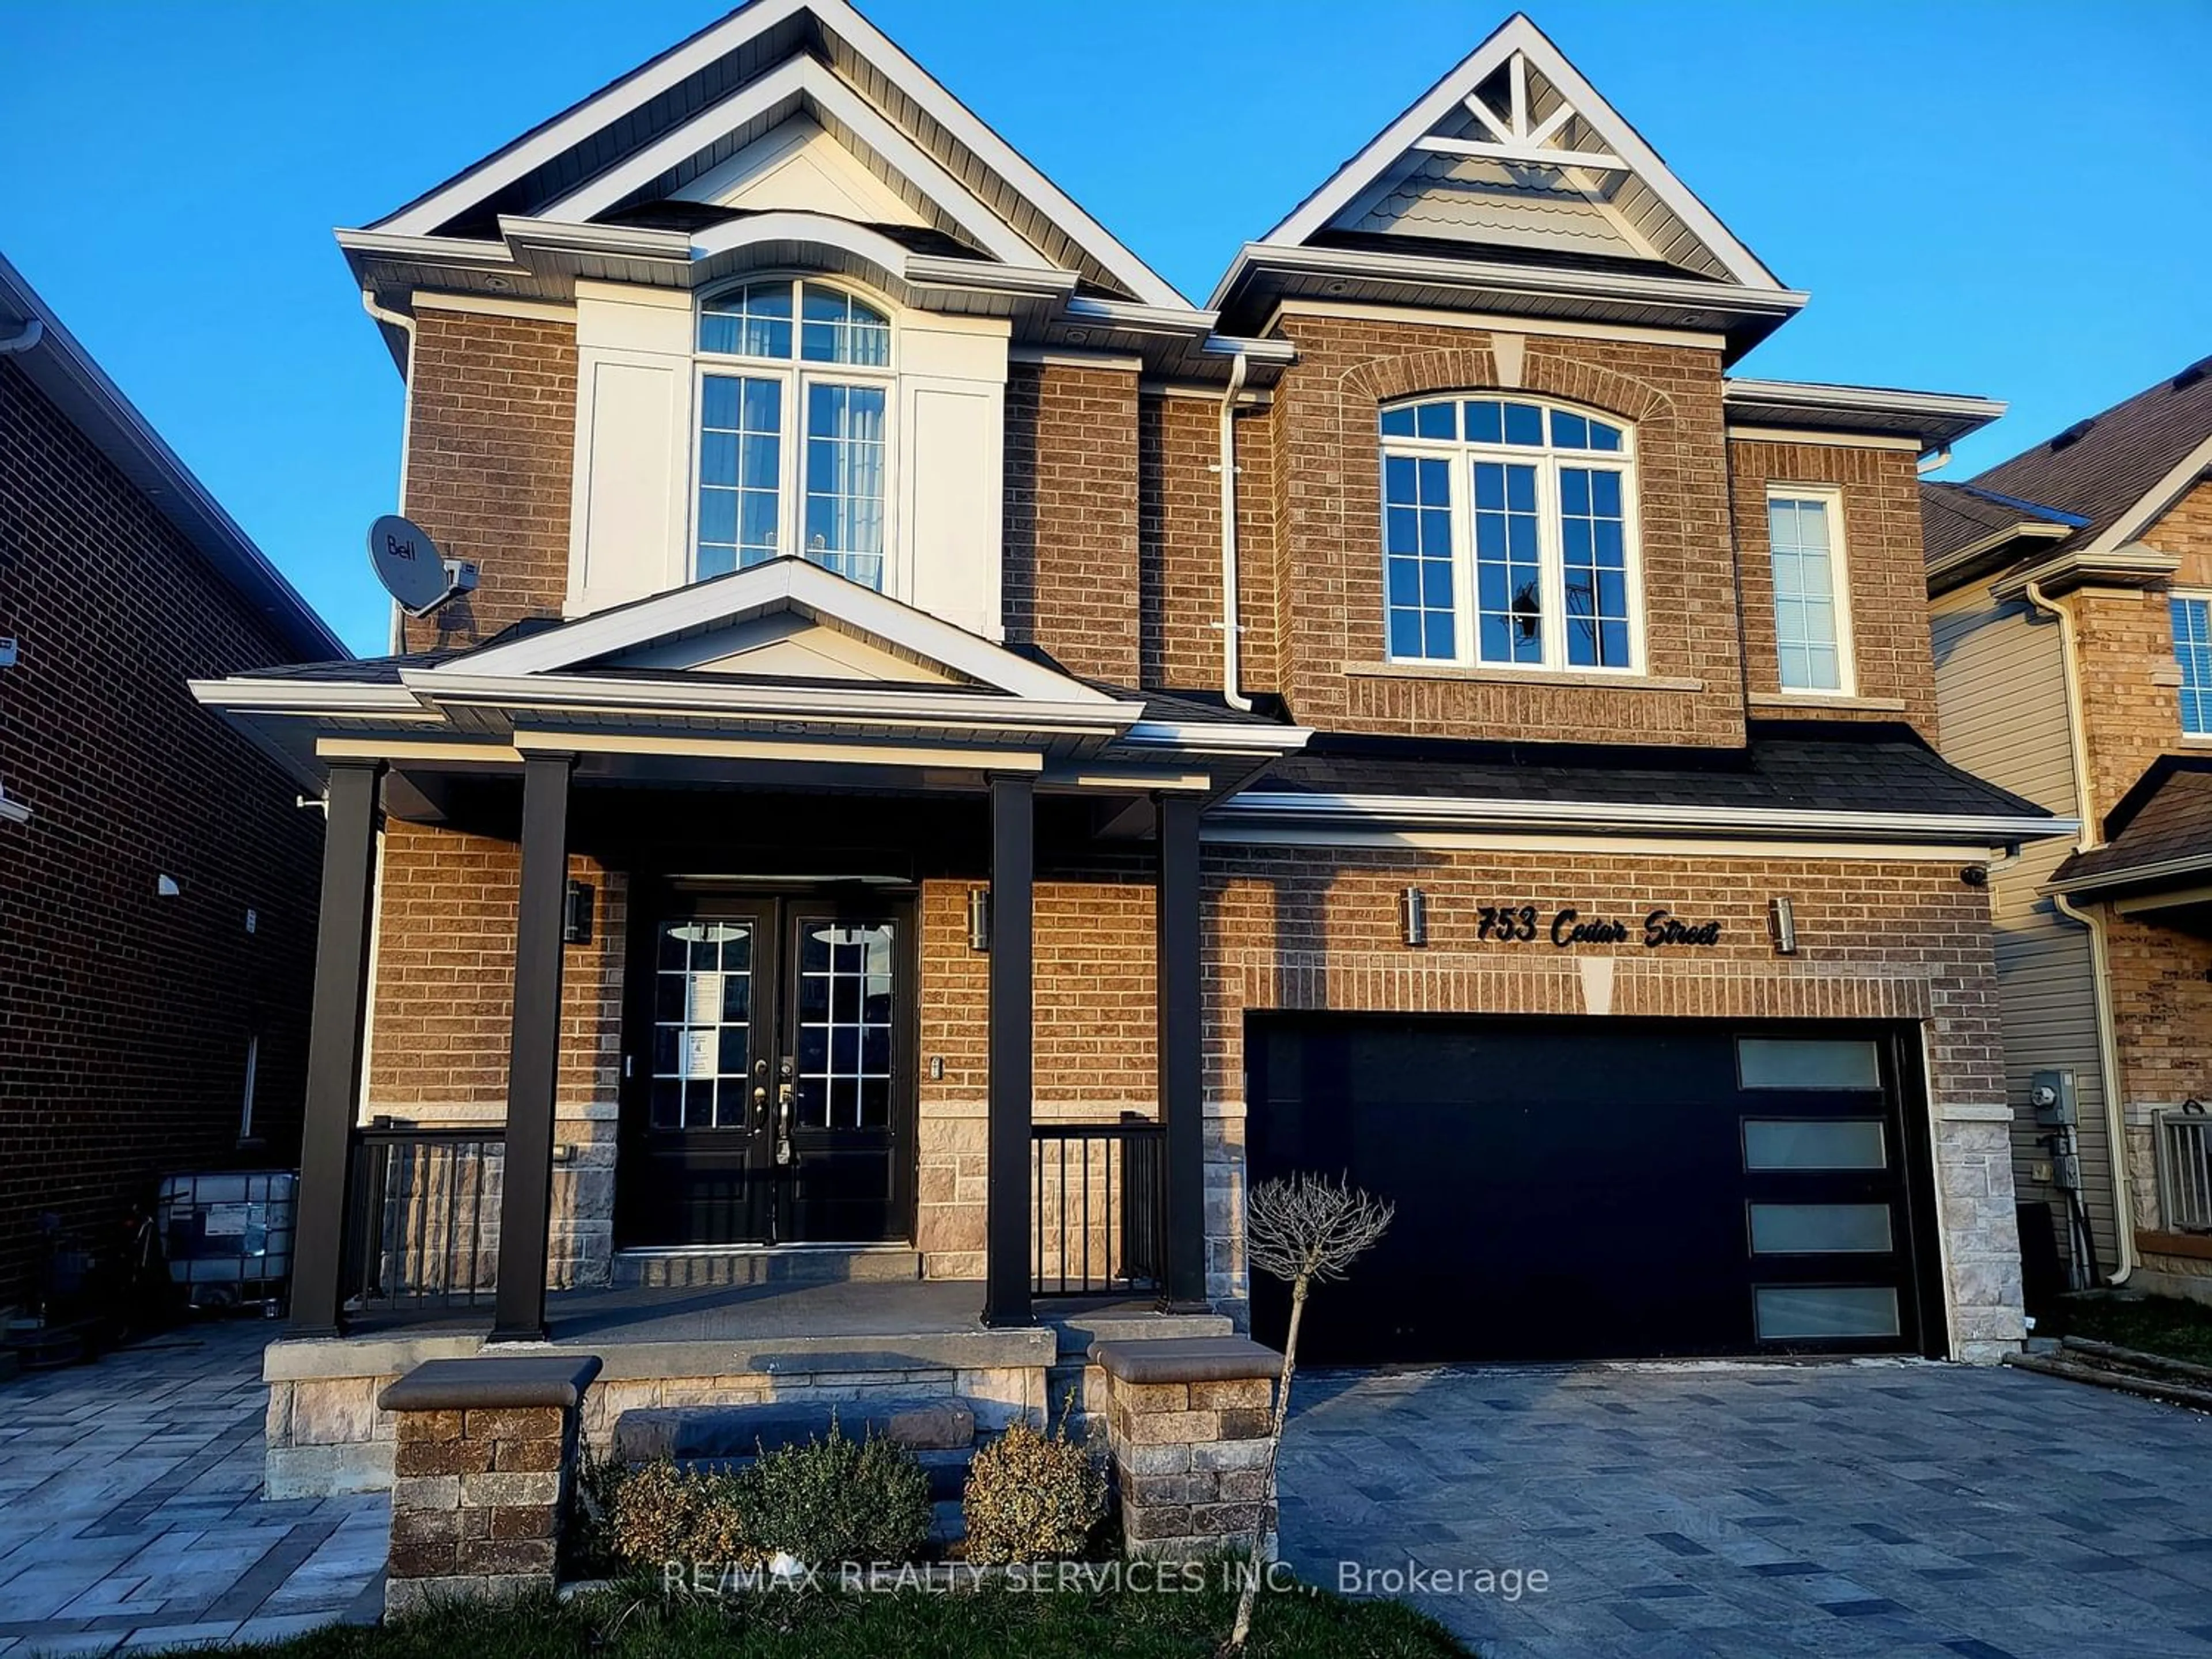 Home with brick exterior material for 753 Cedar St, Shelburne Ontario L9V 3W1